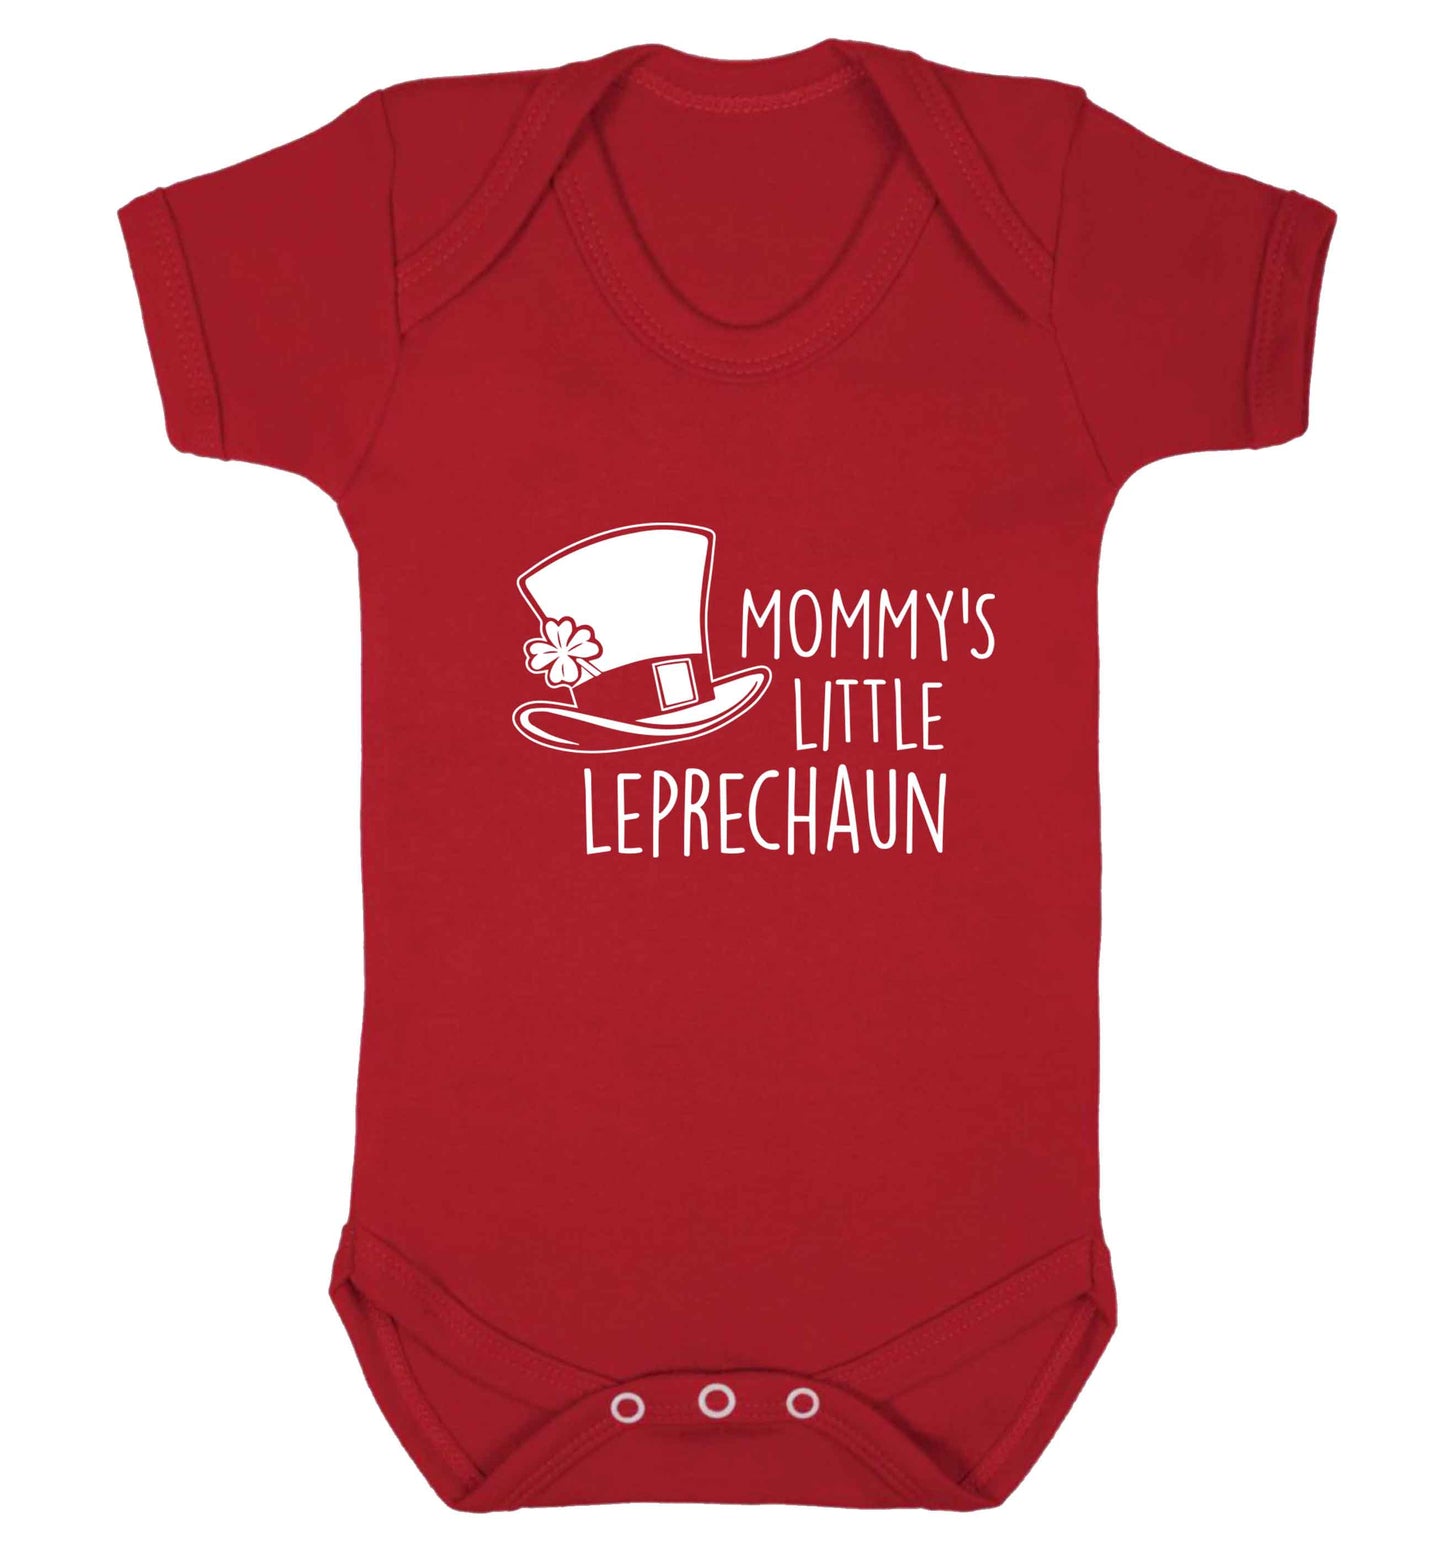 Mommy's little leprechaun baby vest red 18-24 months